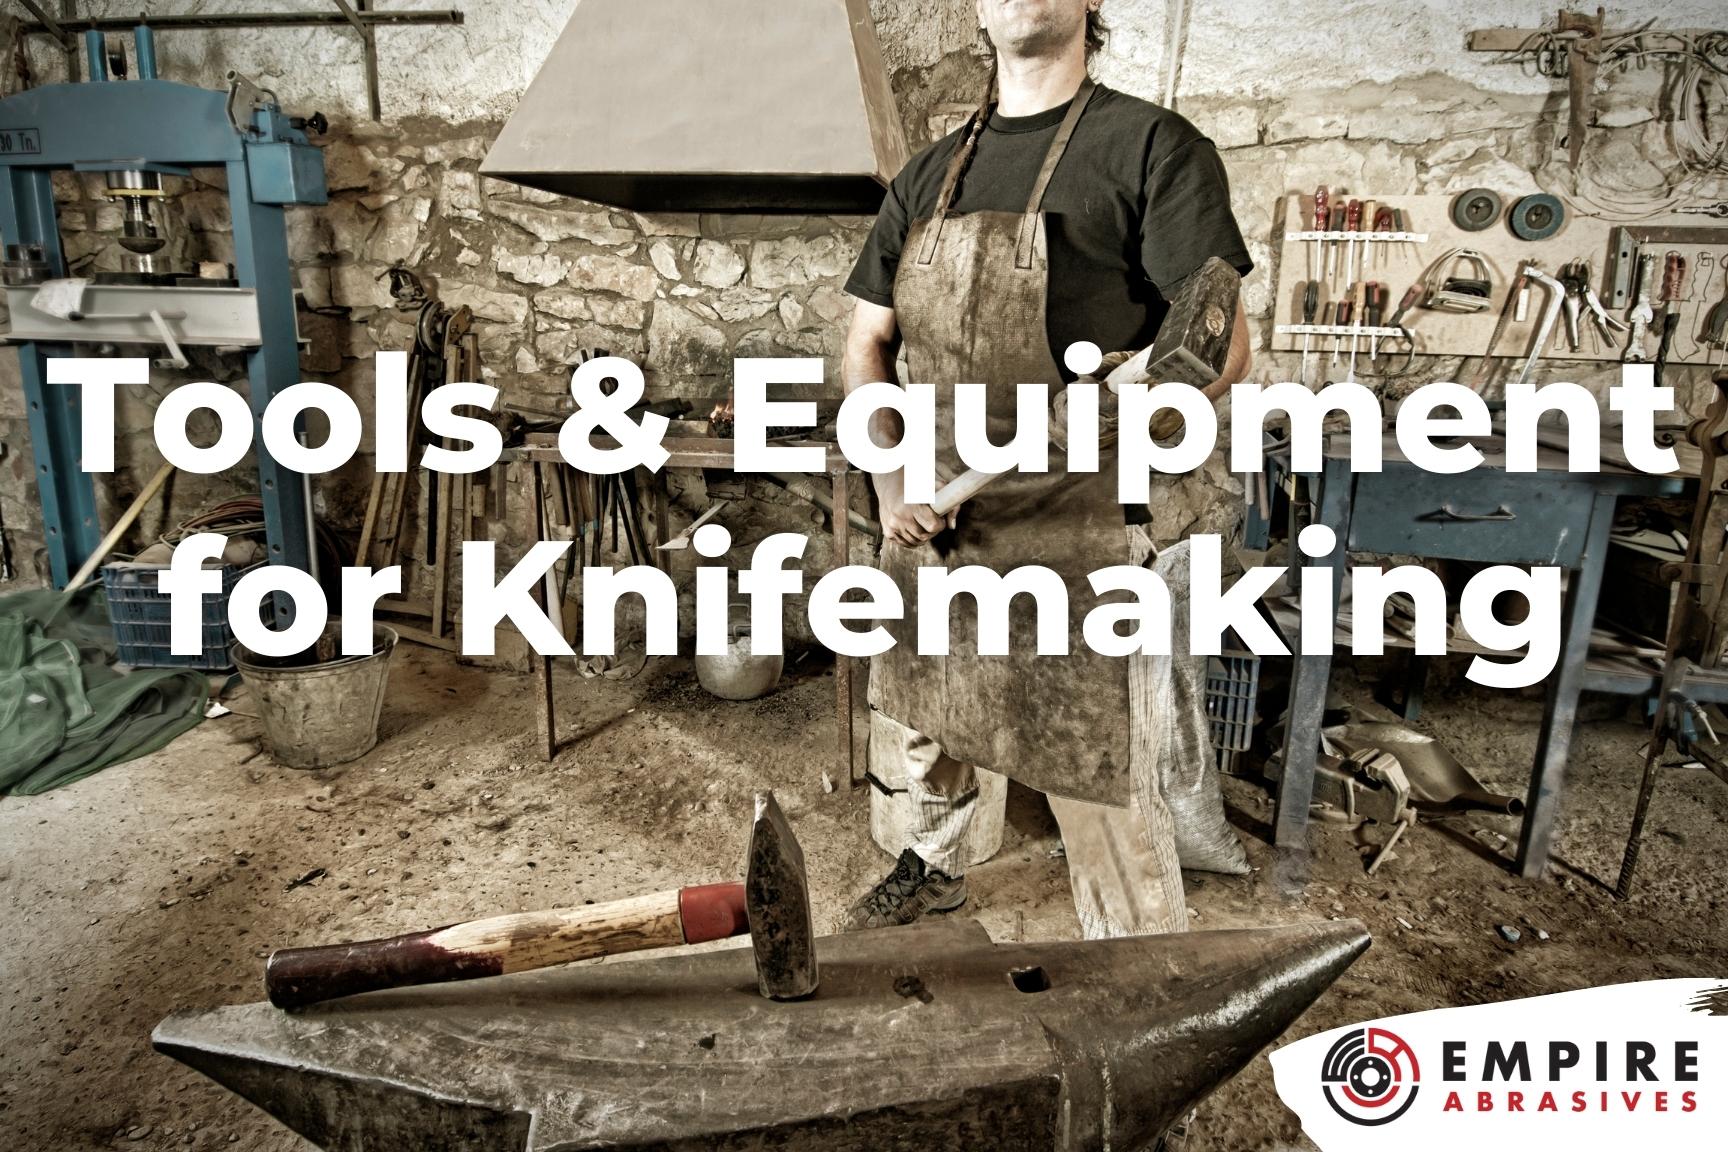 Beginning Knifemaking - What Equipment Do I Need?